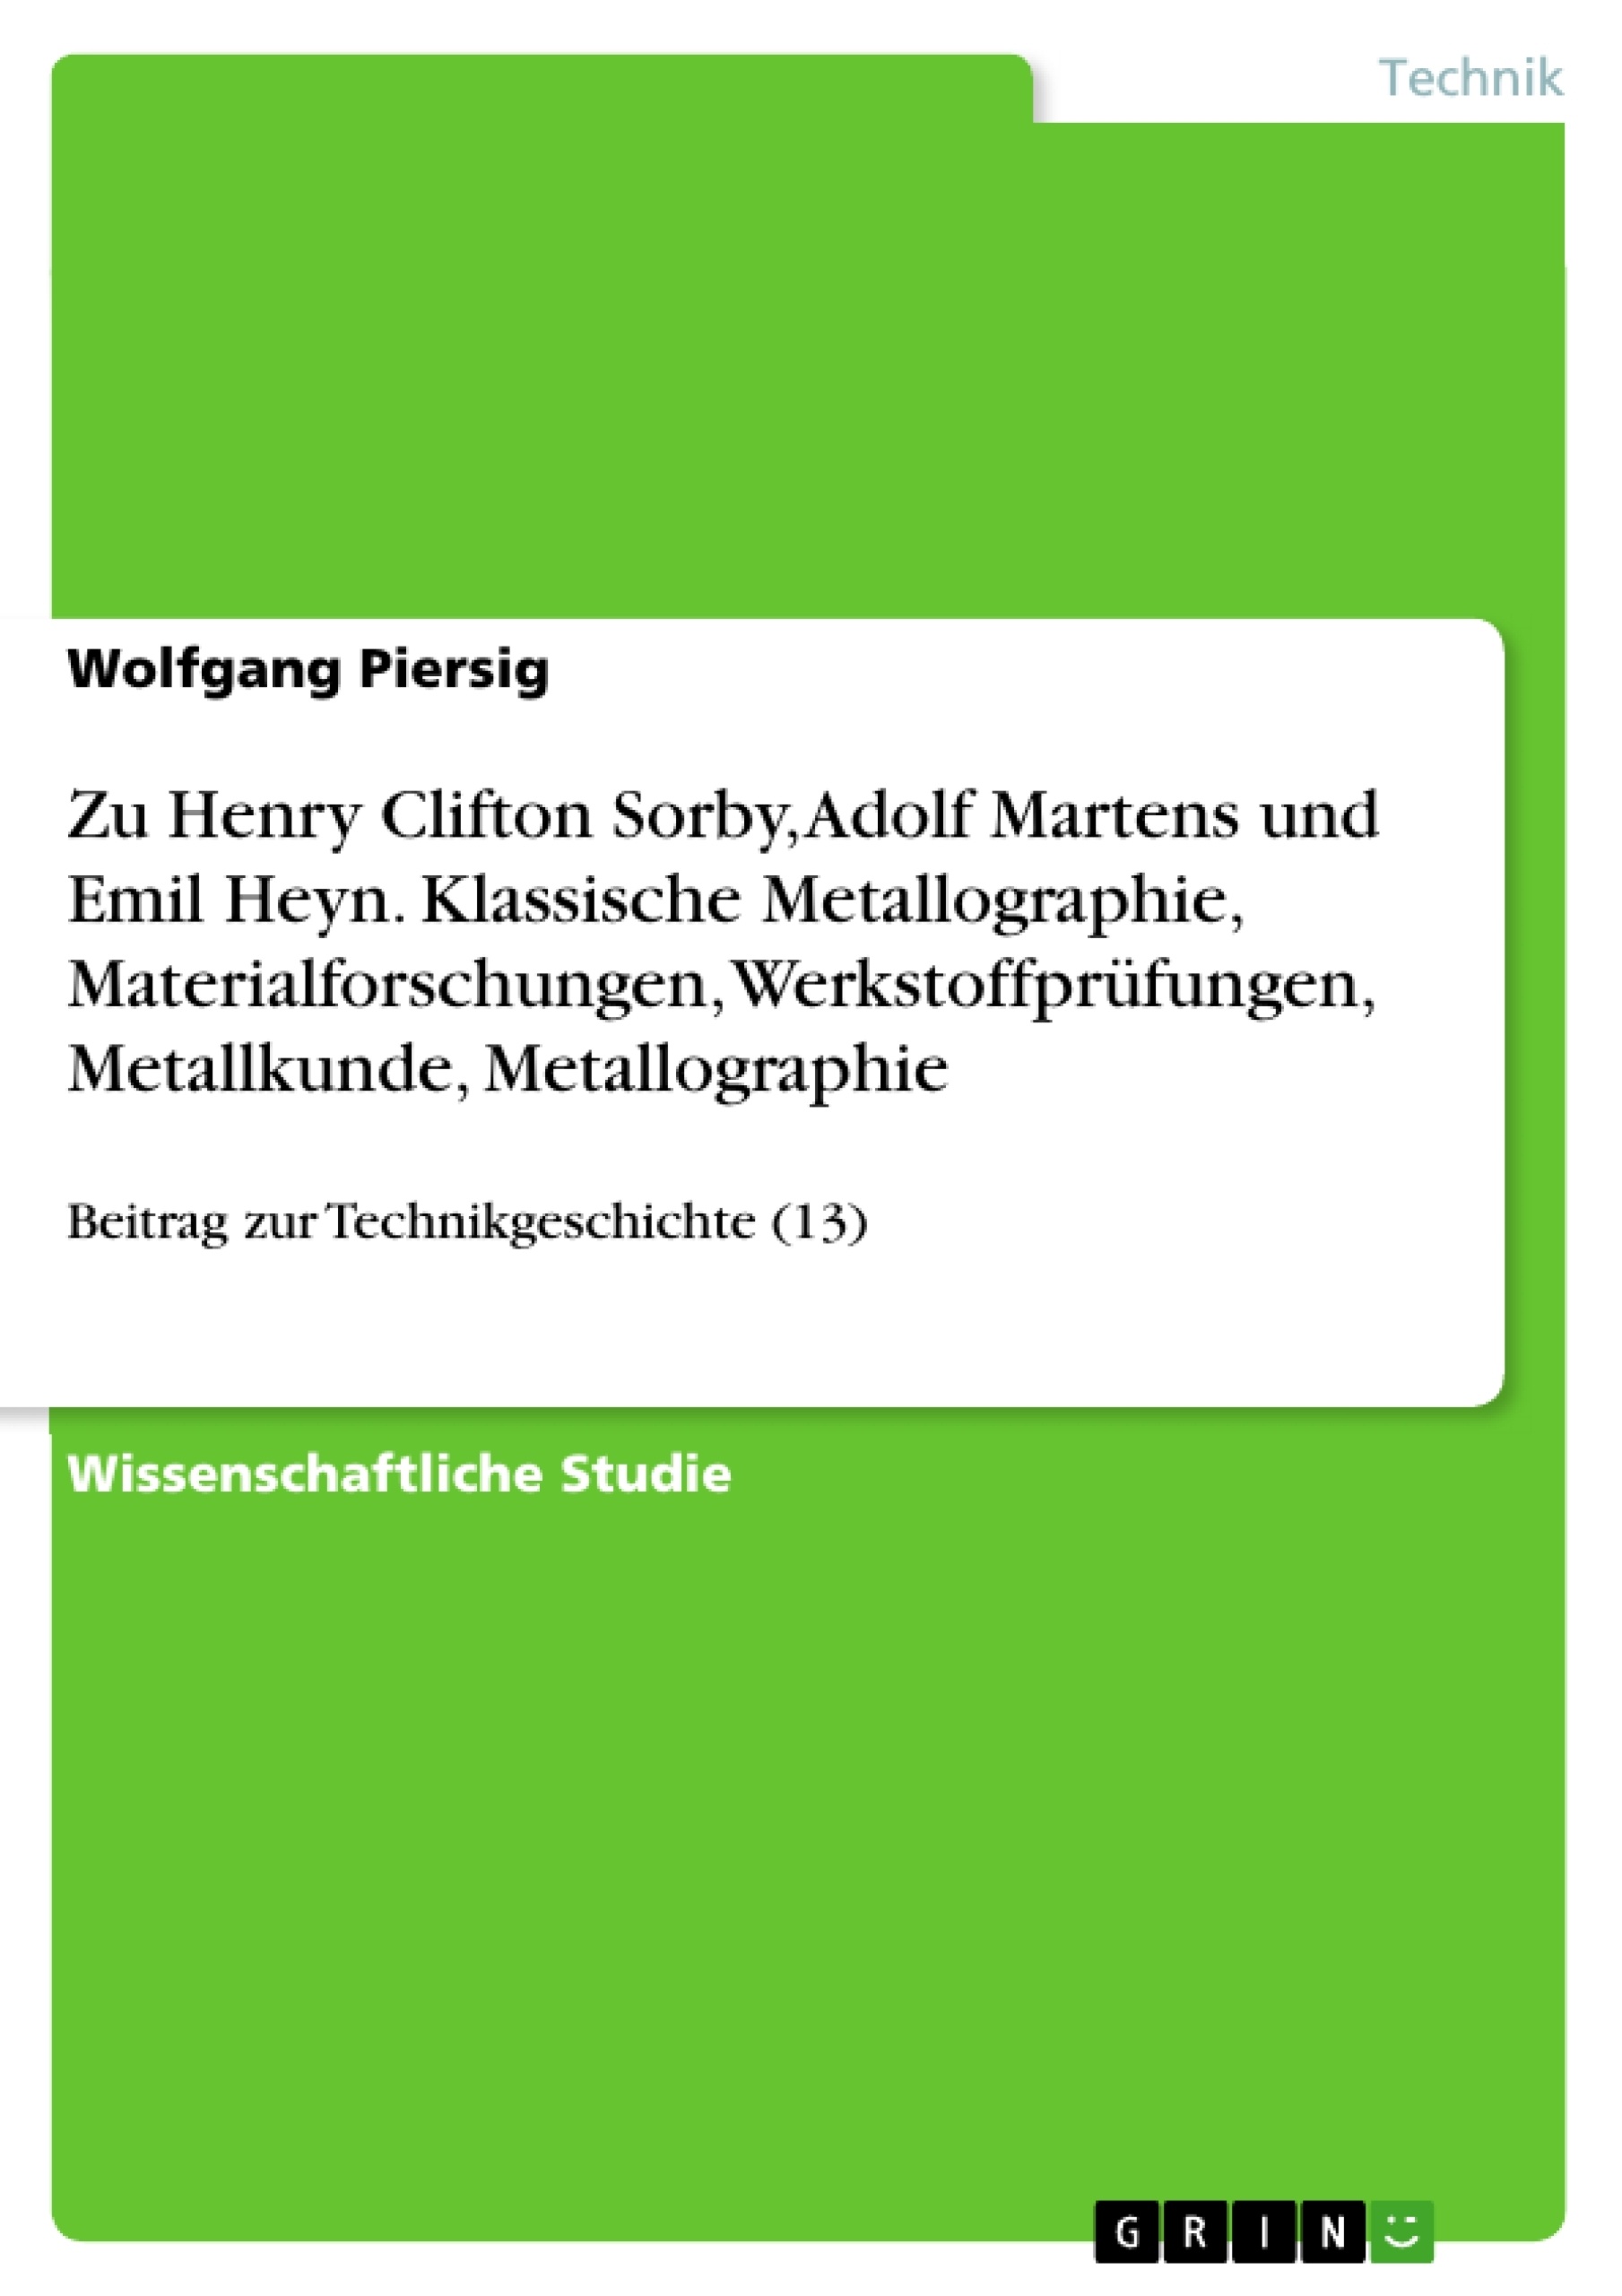 Título: Zu Henry Clifton Sorby, Adolf Martens und Emil Heyn. Klassische Metallographie, Materialforschungen, Werkstoffprüfungen, Metallkunde, Metallographie